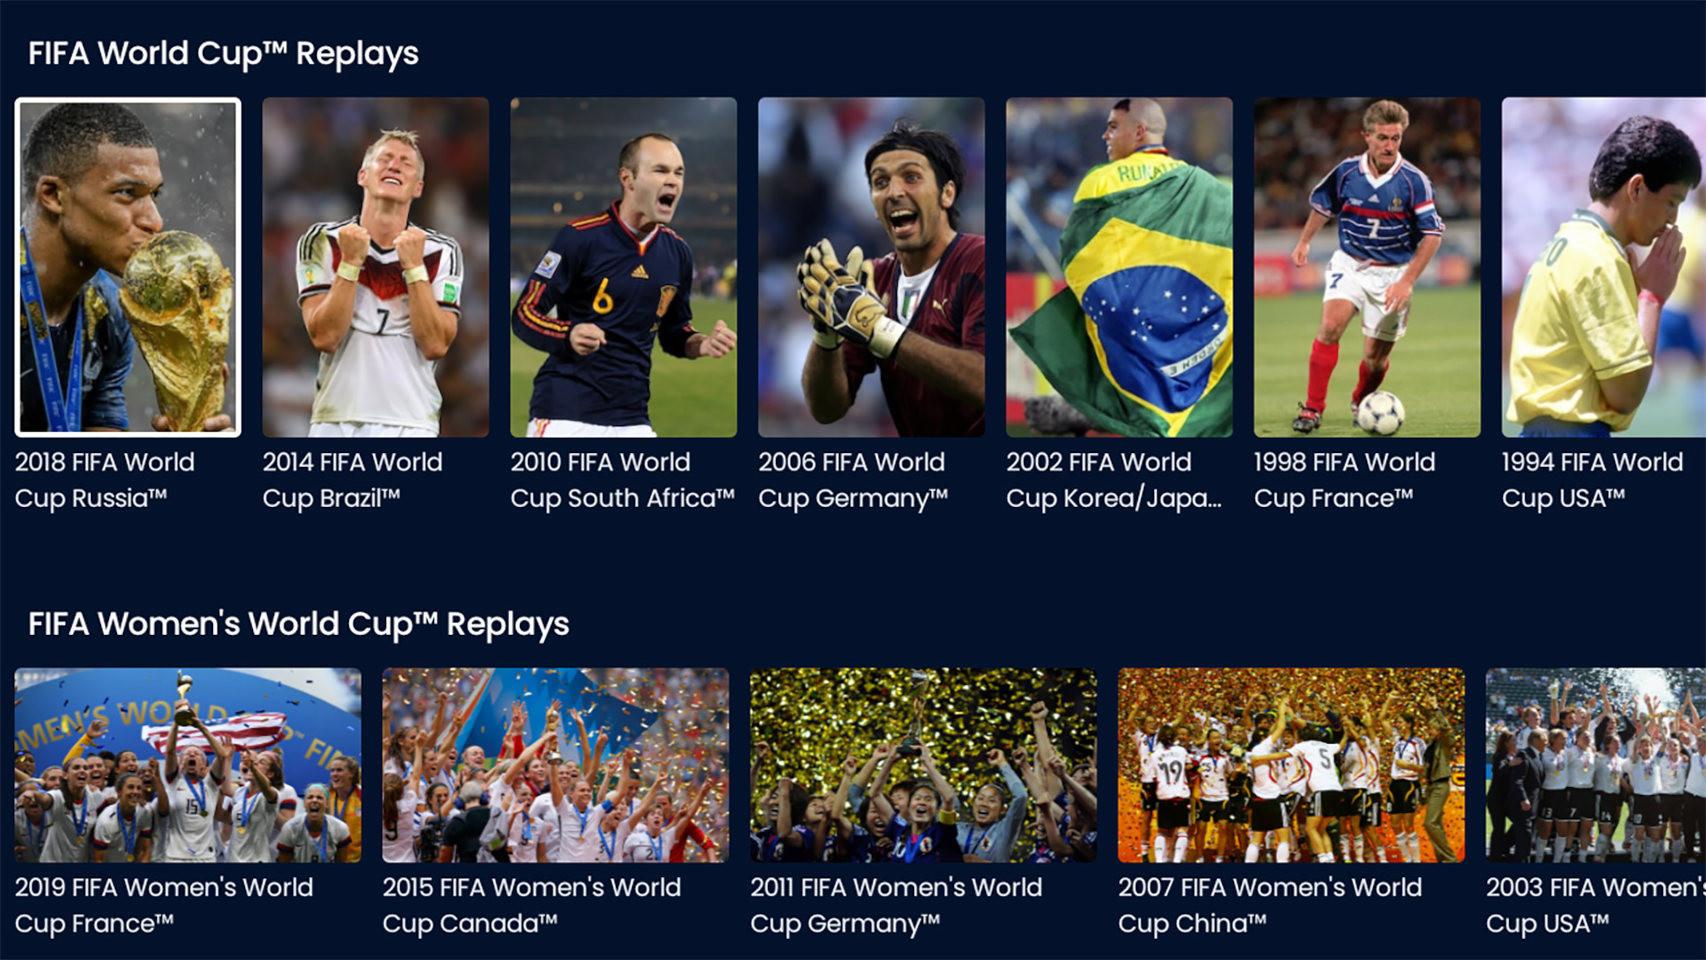 Opiniones de FIFA Plus, la nueva app para ver partidos de fútbol totalmente  gratis